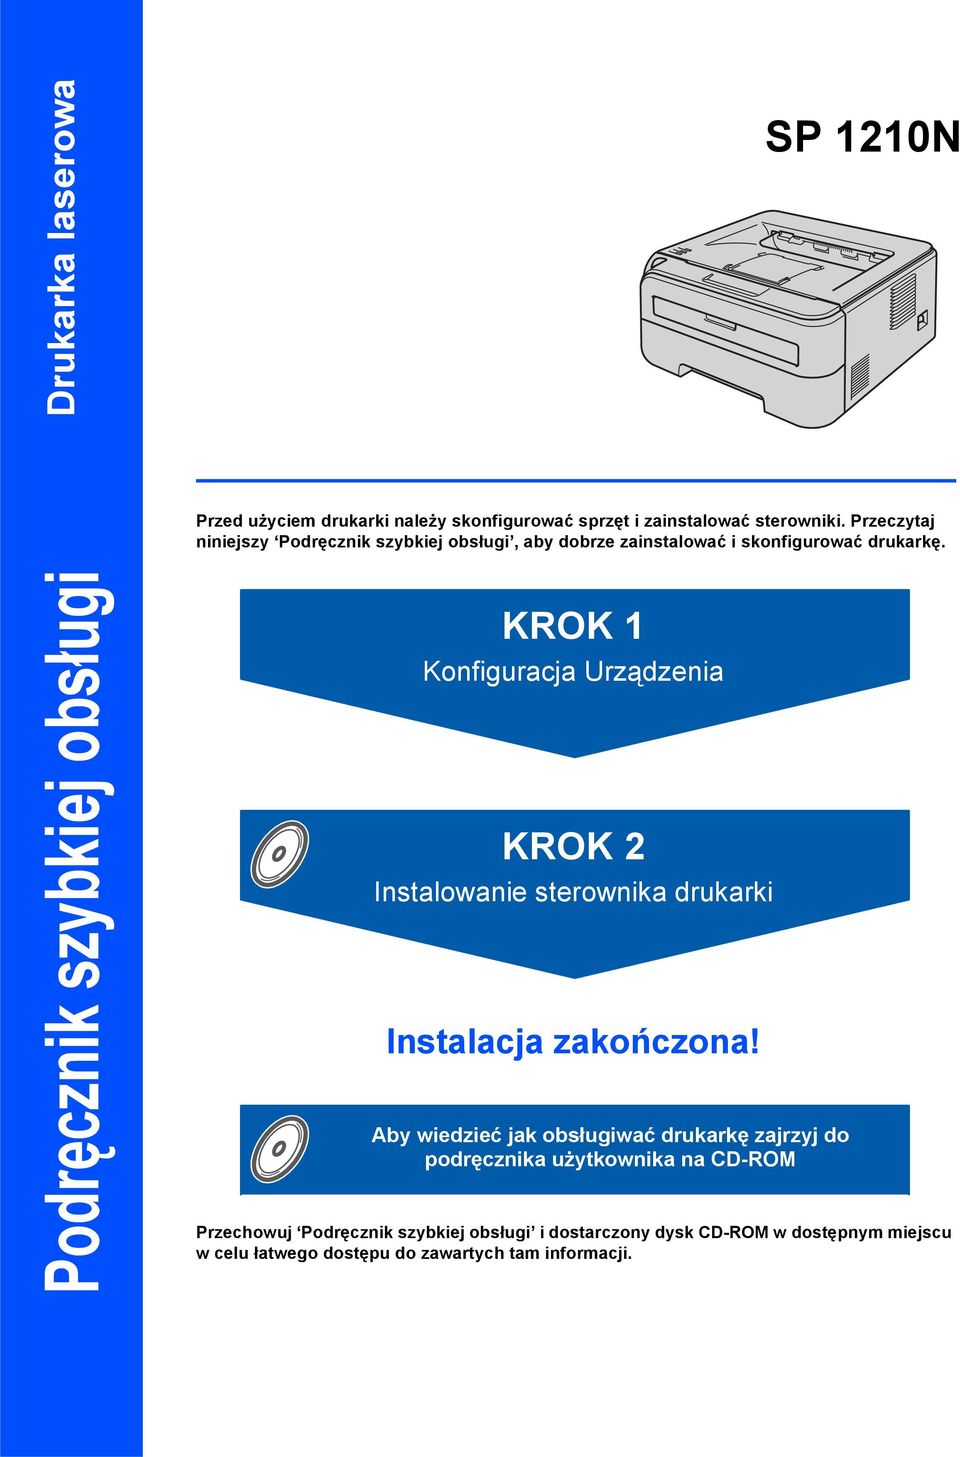 Podręcznik szybkiej obsługi KROK Konfiguracja Urządzenia KROK 2 Instalowanie sterownika drukarki Instalacja zakończona!